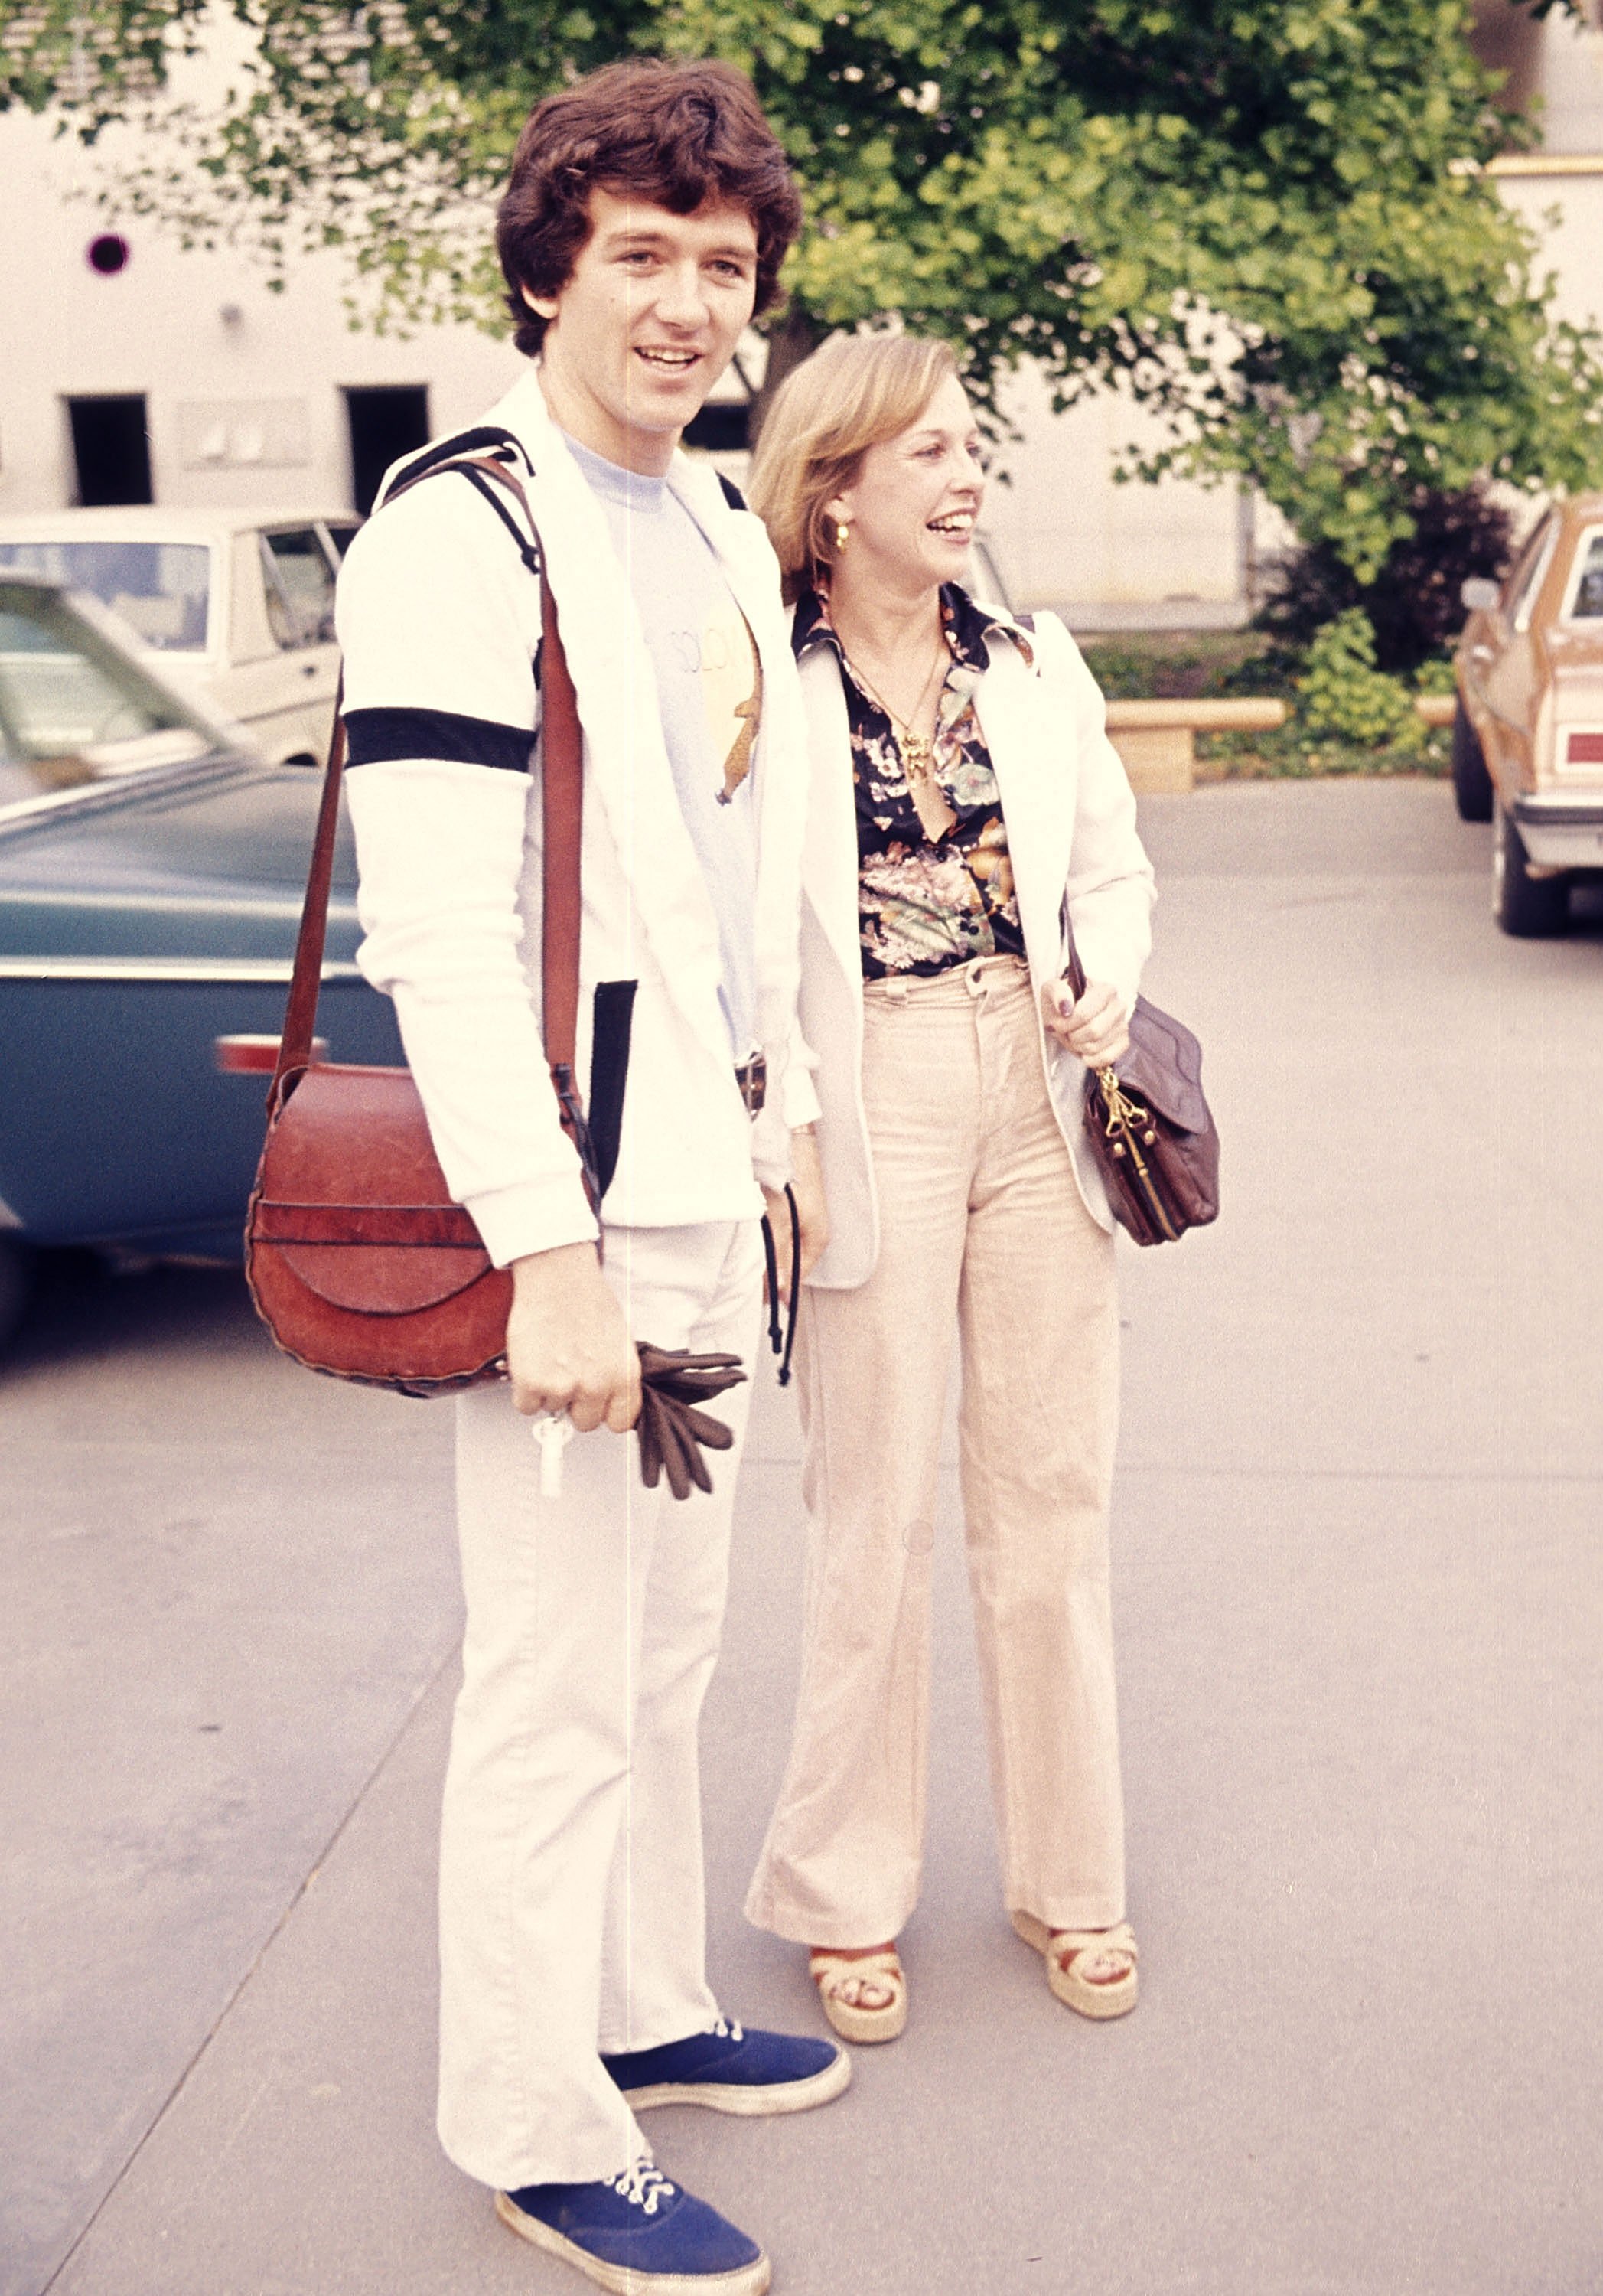 Patrick Duffy ve Carlyn Rosser, 22 Mayıs 1977'de Northridge, California'da Bedensel Engelliler Yardım Fonu için Ünlü Tekerlekli Sandalye Basketbol Maçında |  Kaynak: Getty Images